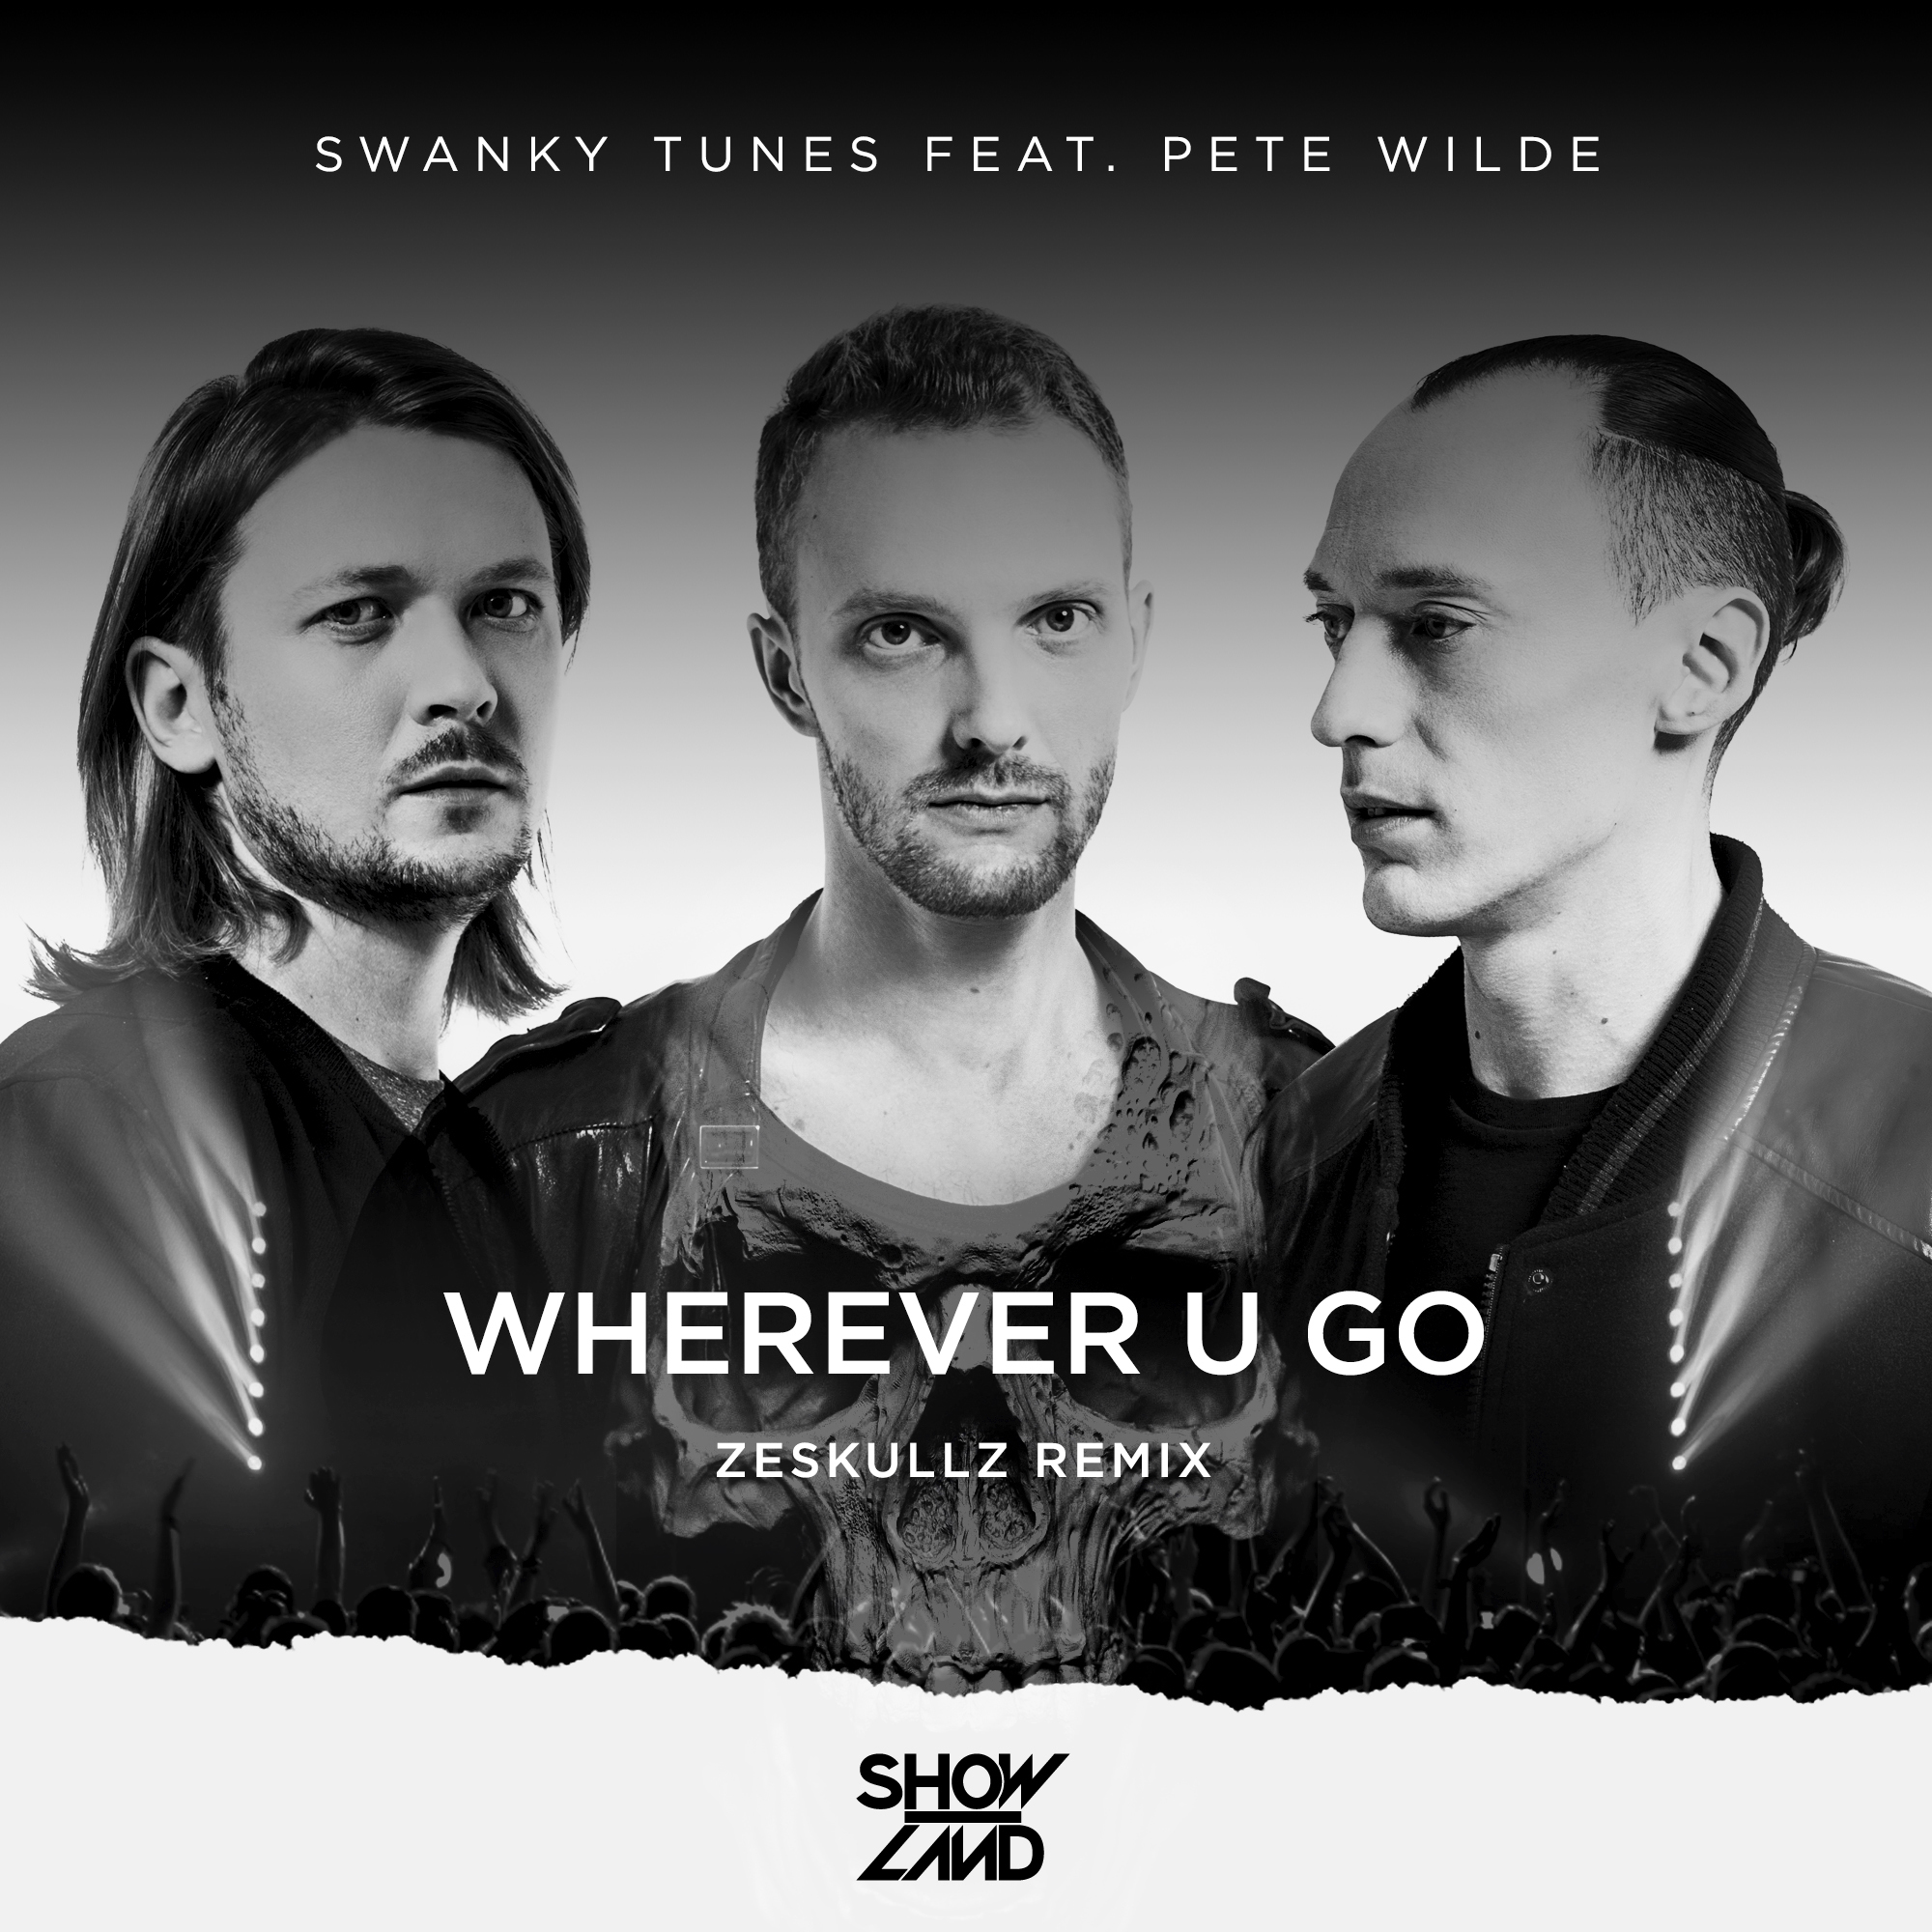 Wherever U Go (Zeskullz Remix)